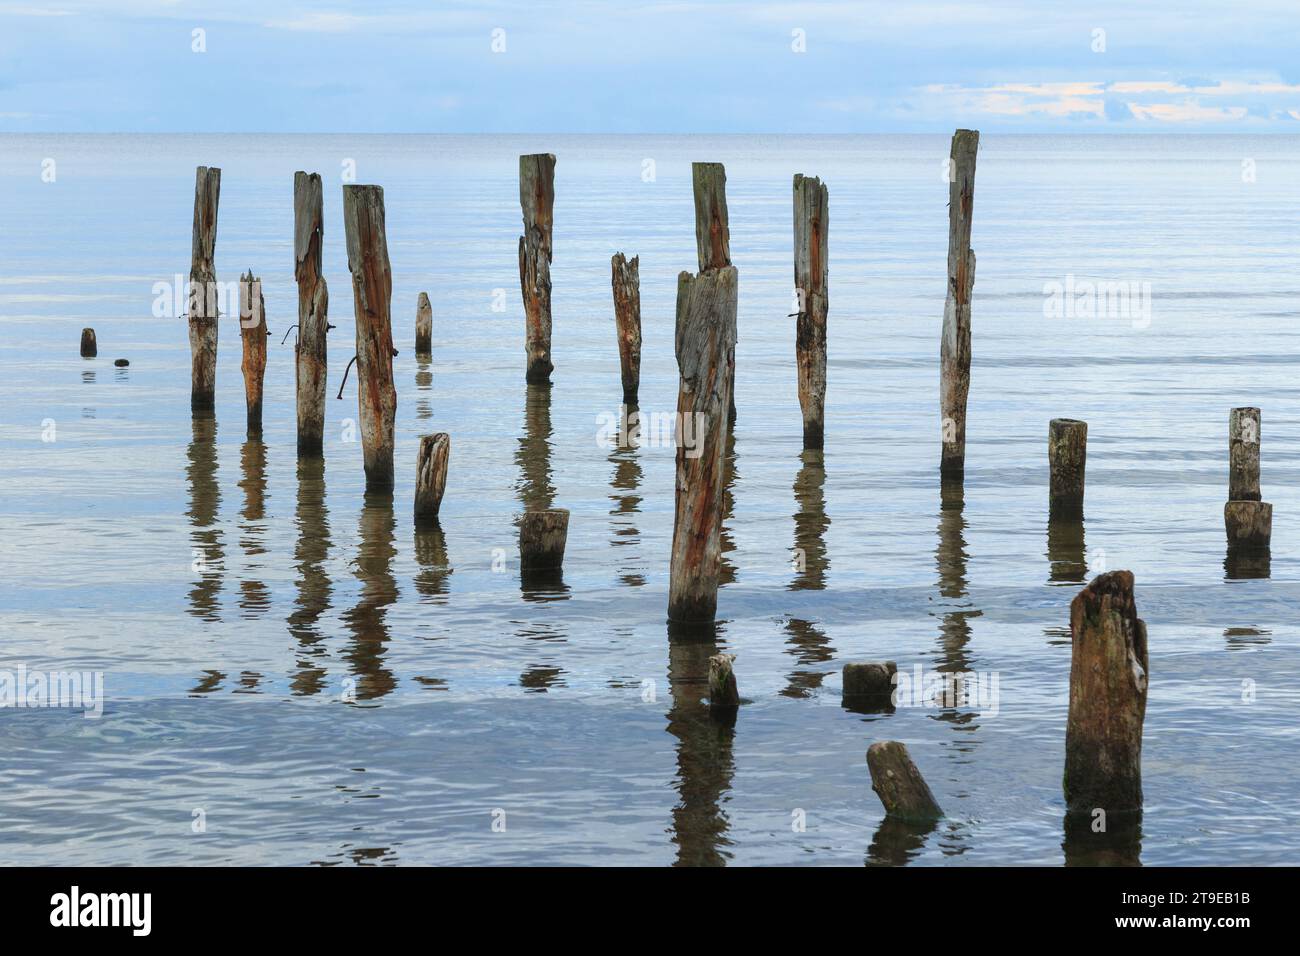 Eine wunderschöne Aufnahme einer ruhigen Meereslandschaft mit gebrochenen Pier-Pfählen, die aus dem Wasser ragen, auf dem Horizont. Stockfoto